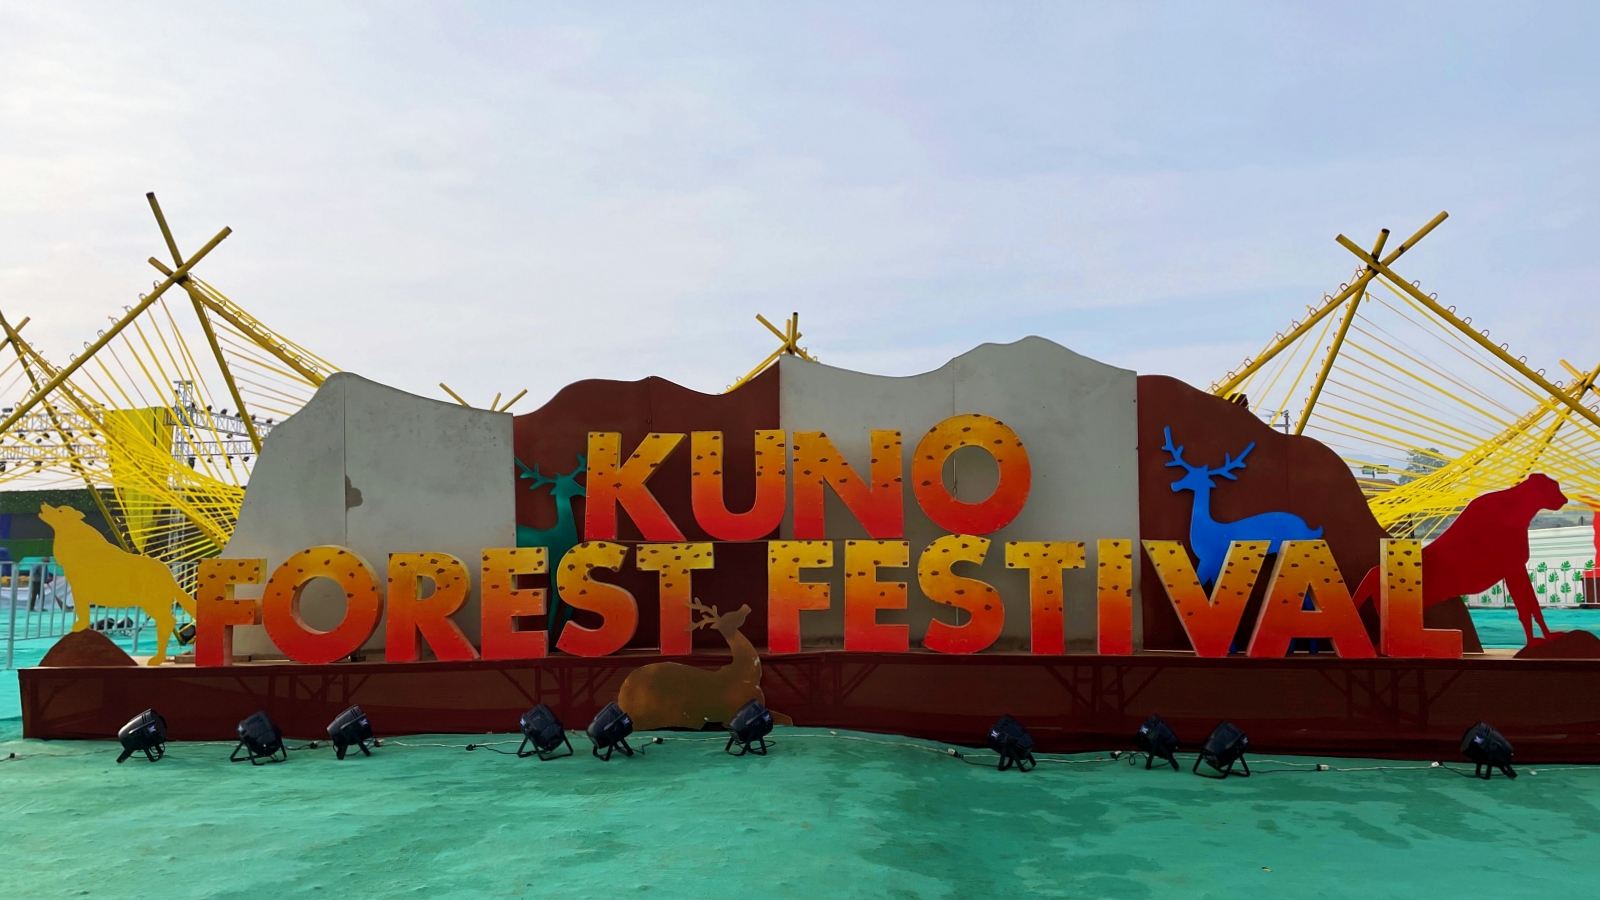 Kuno Forest Festival